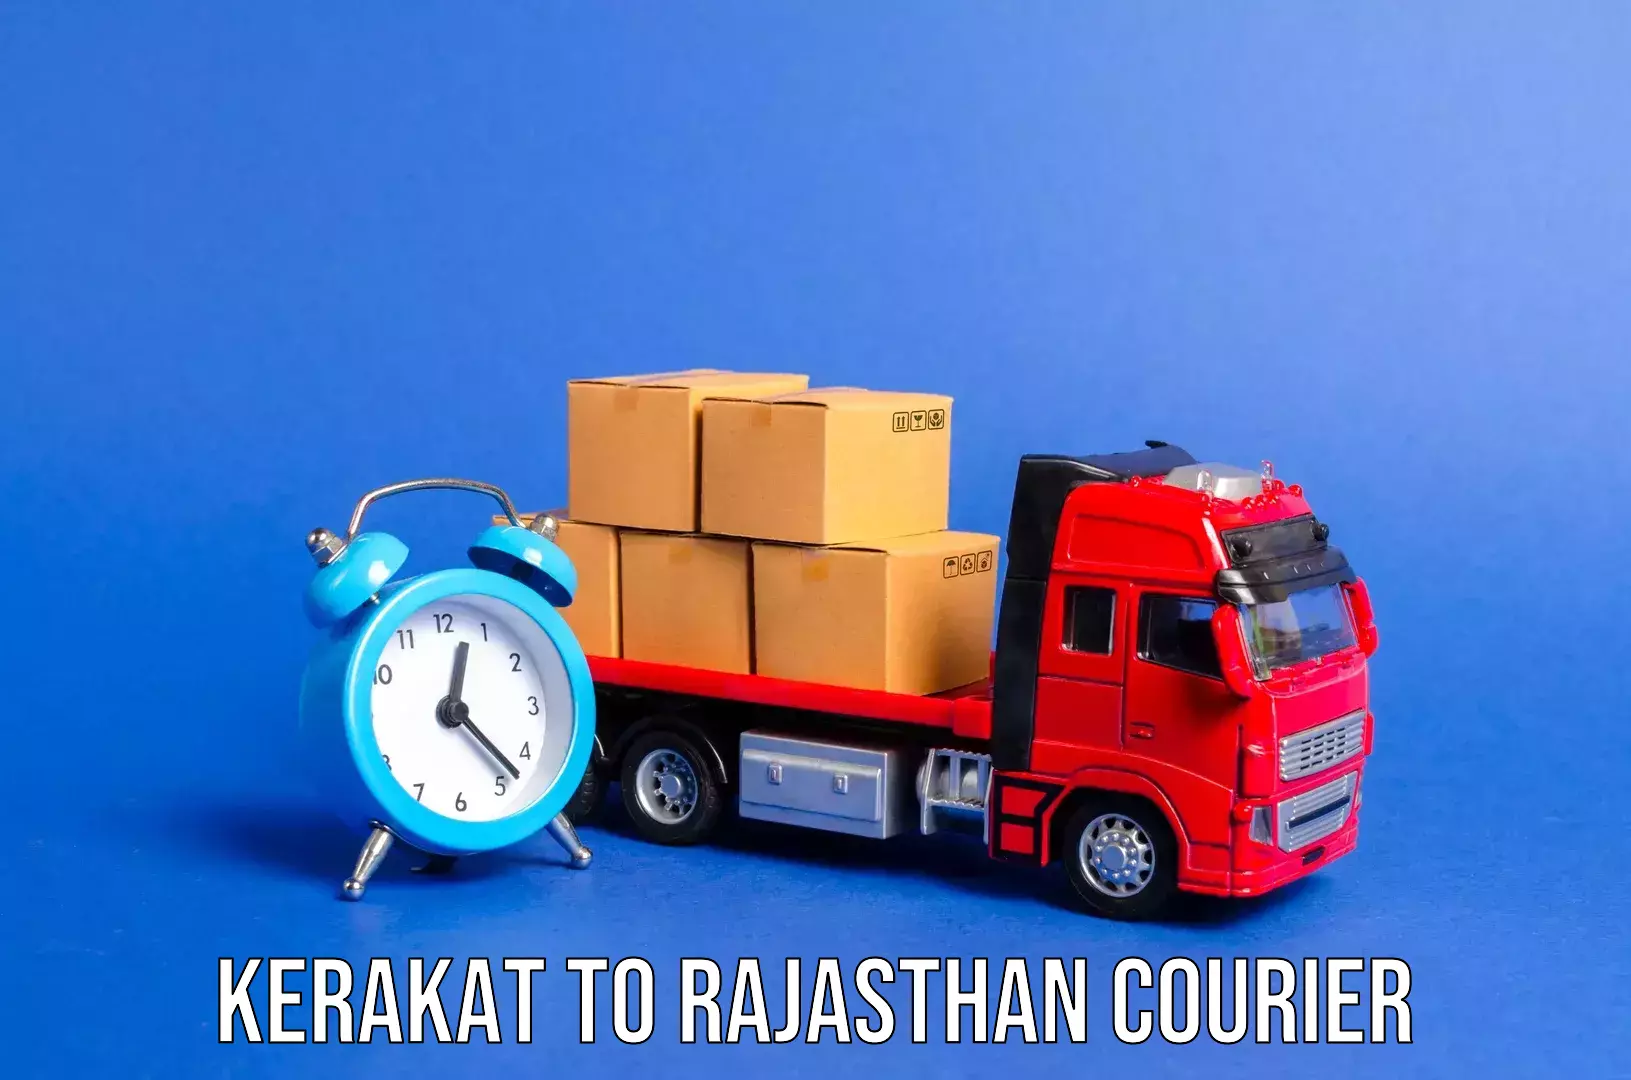 Doorstep luggage pickup Kerakat to Rajasthan